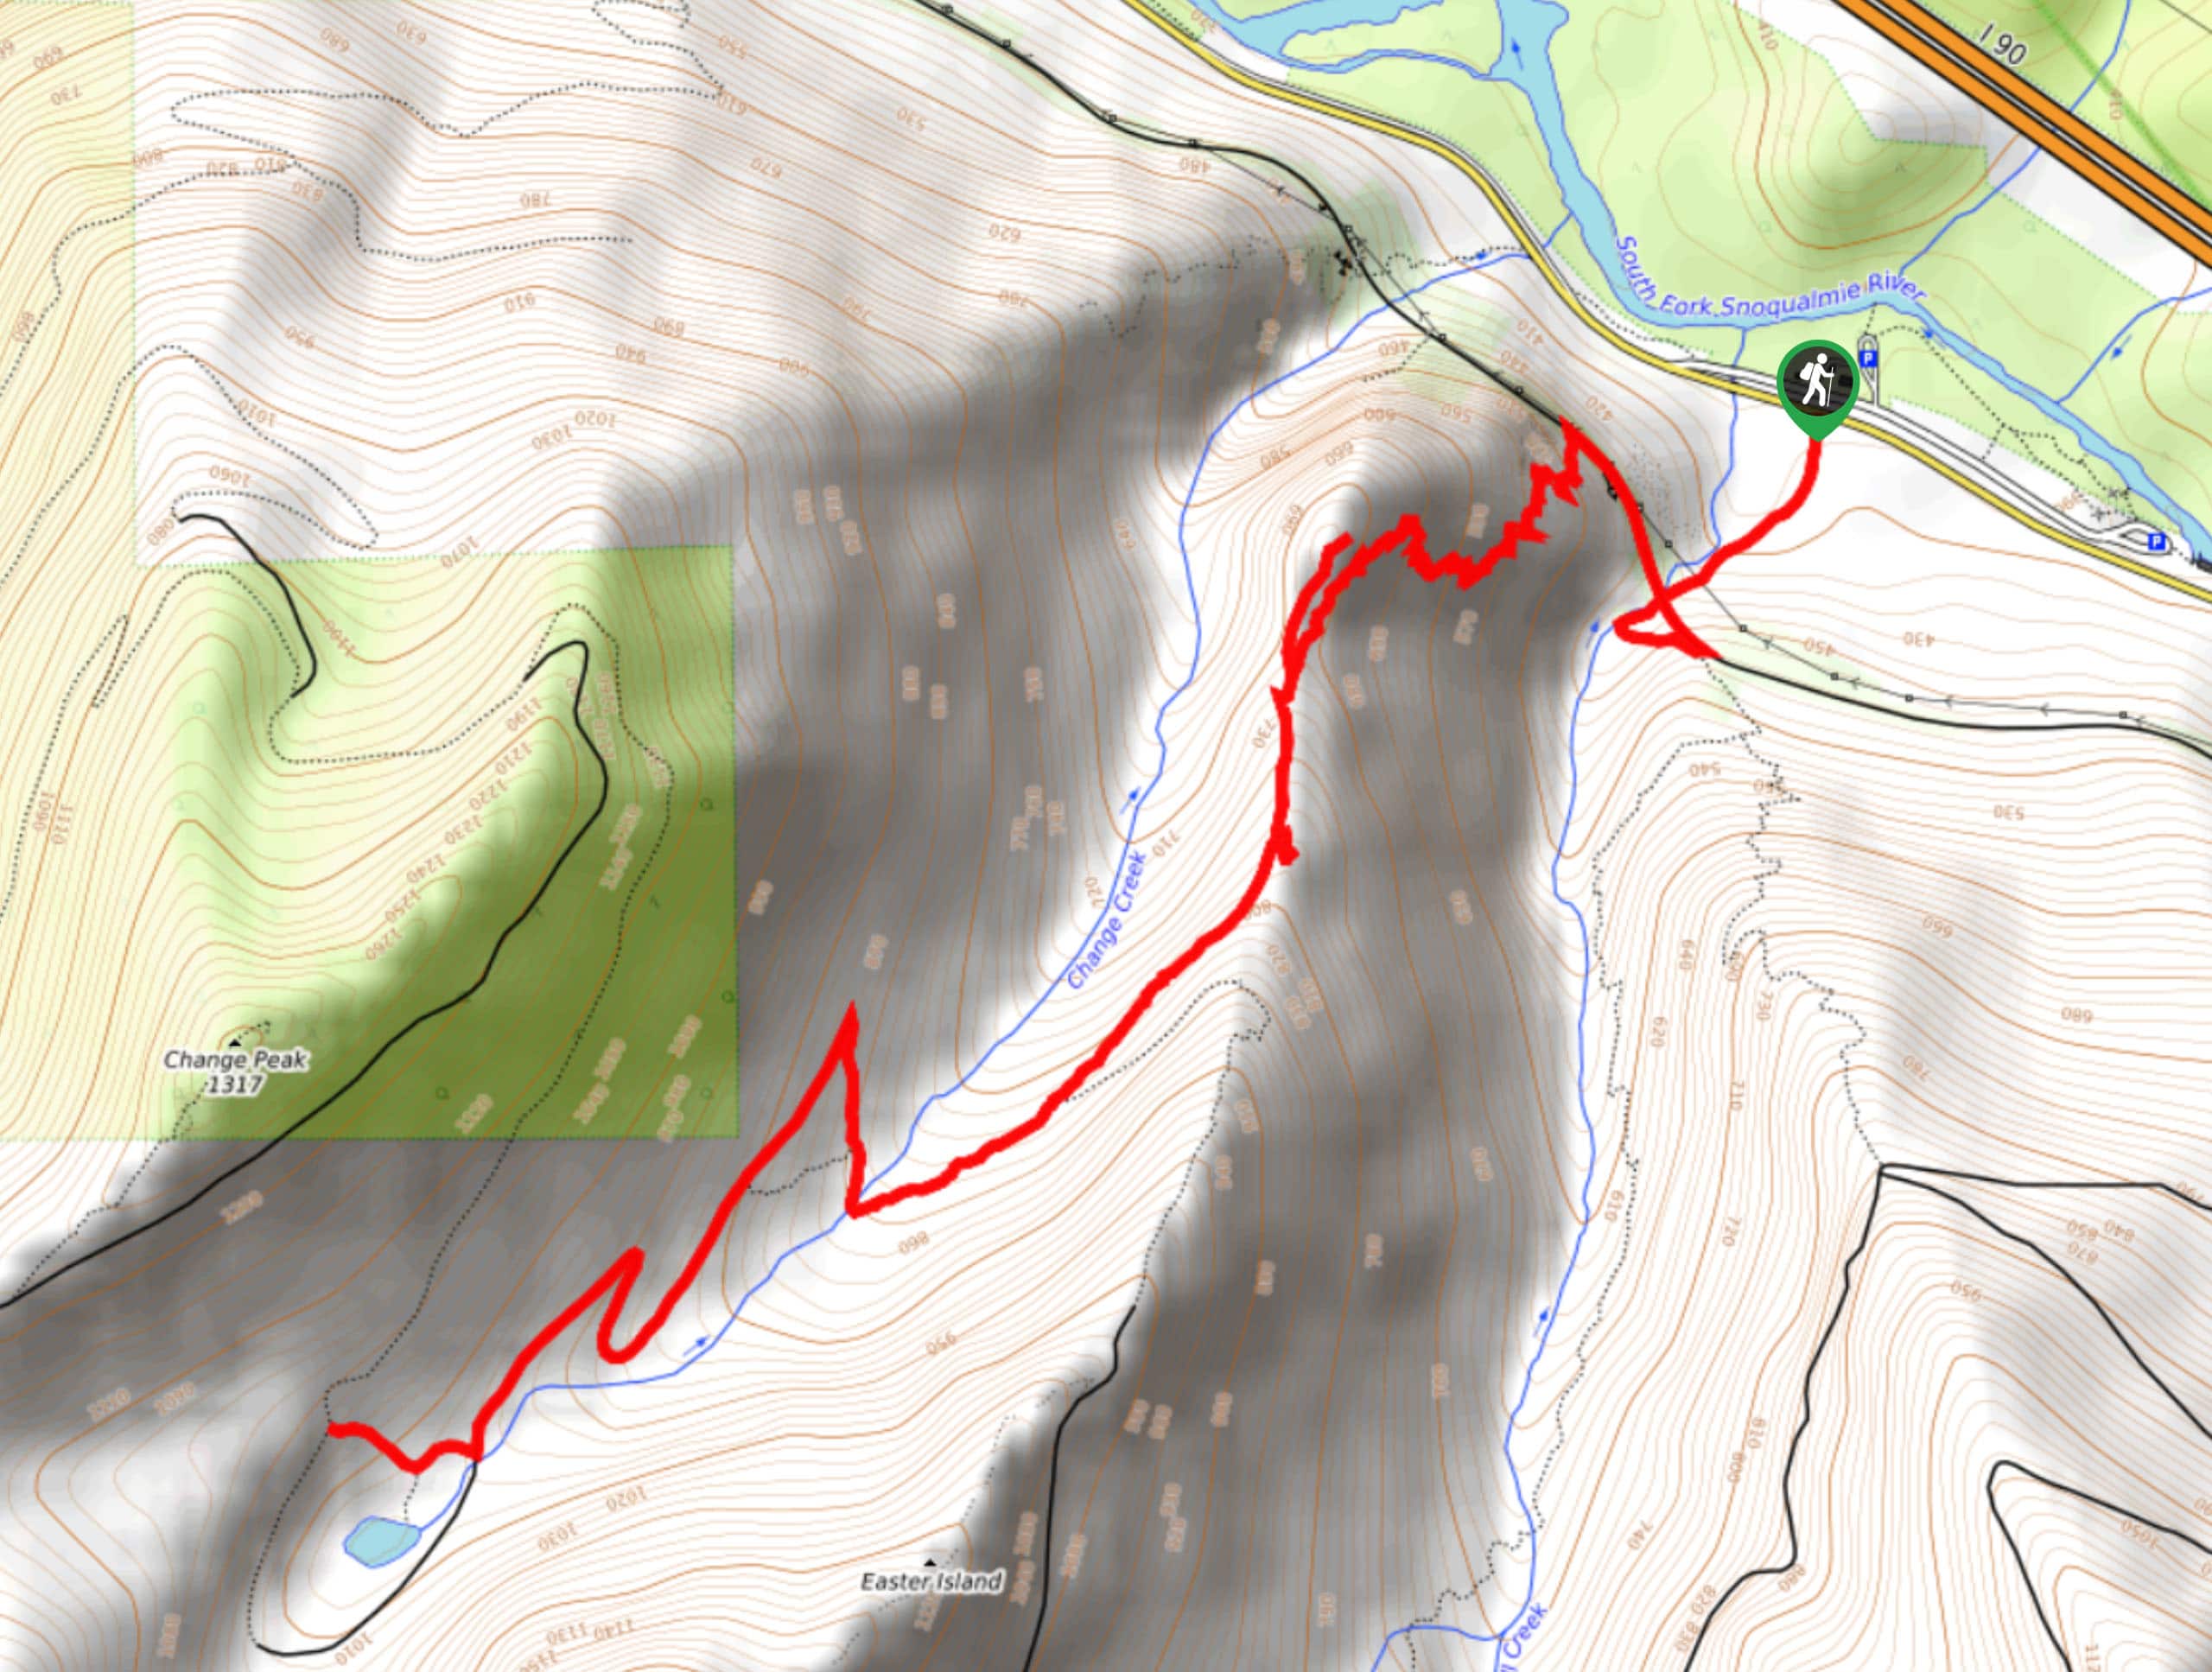 Change Creek Trail Map